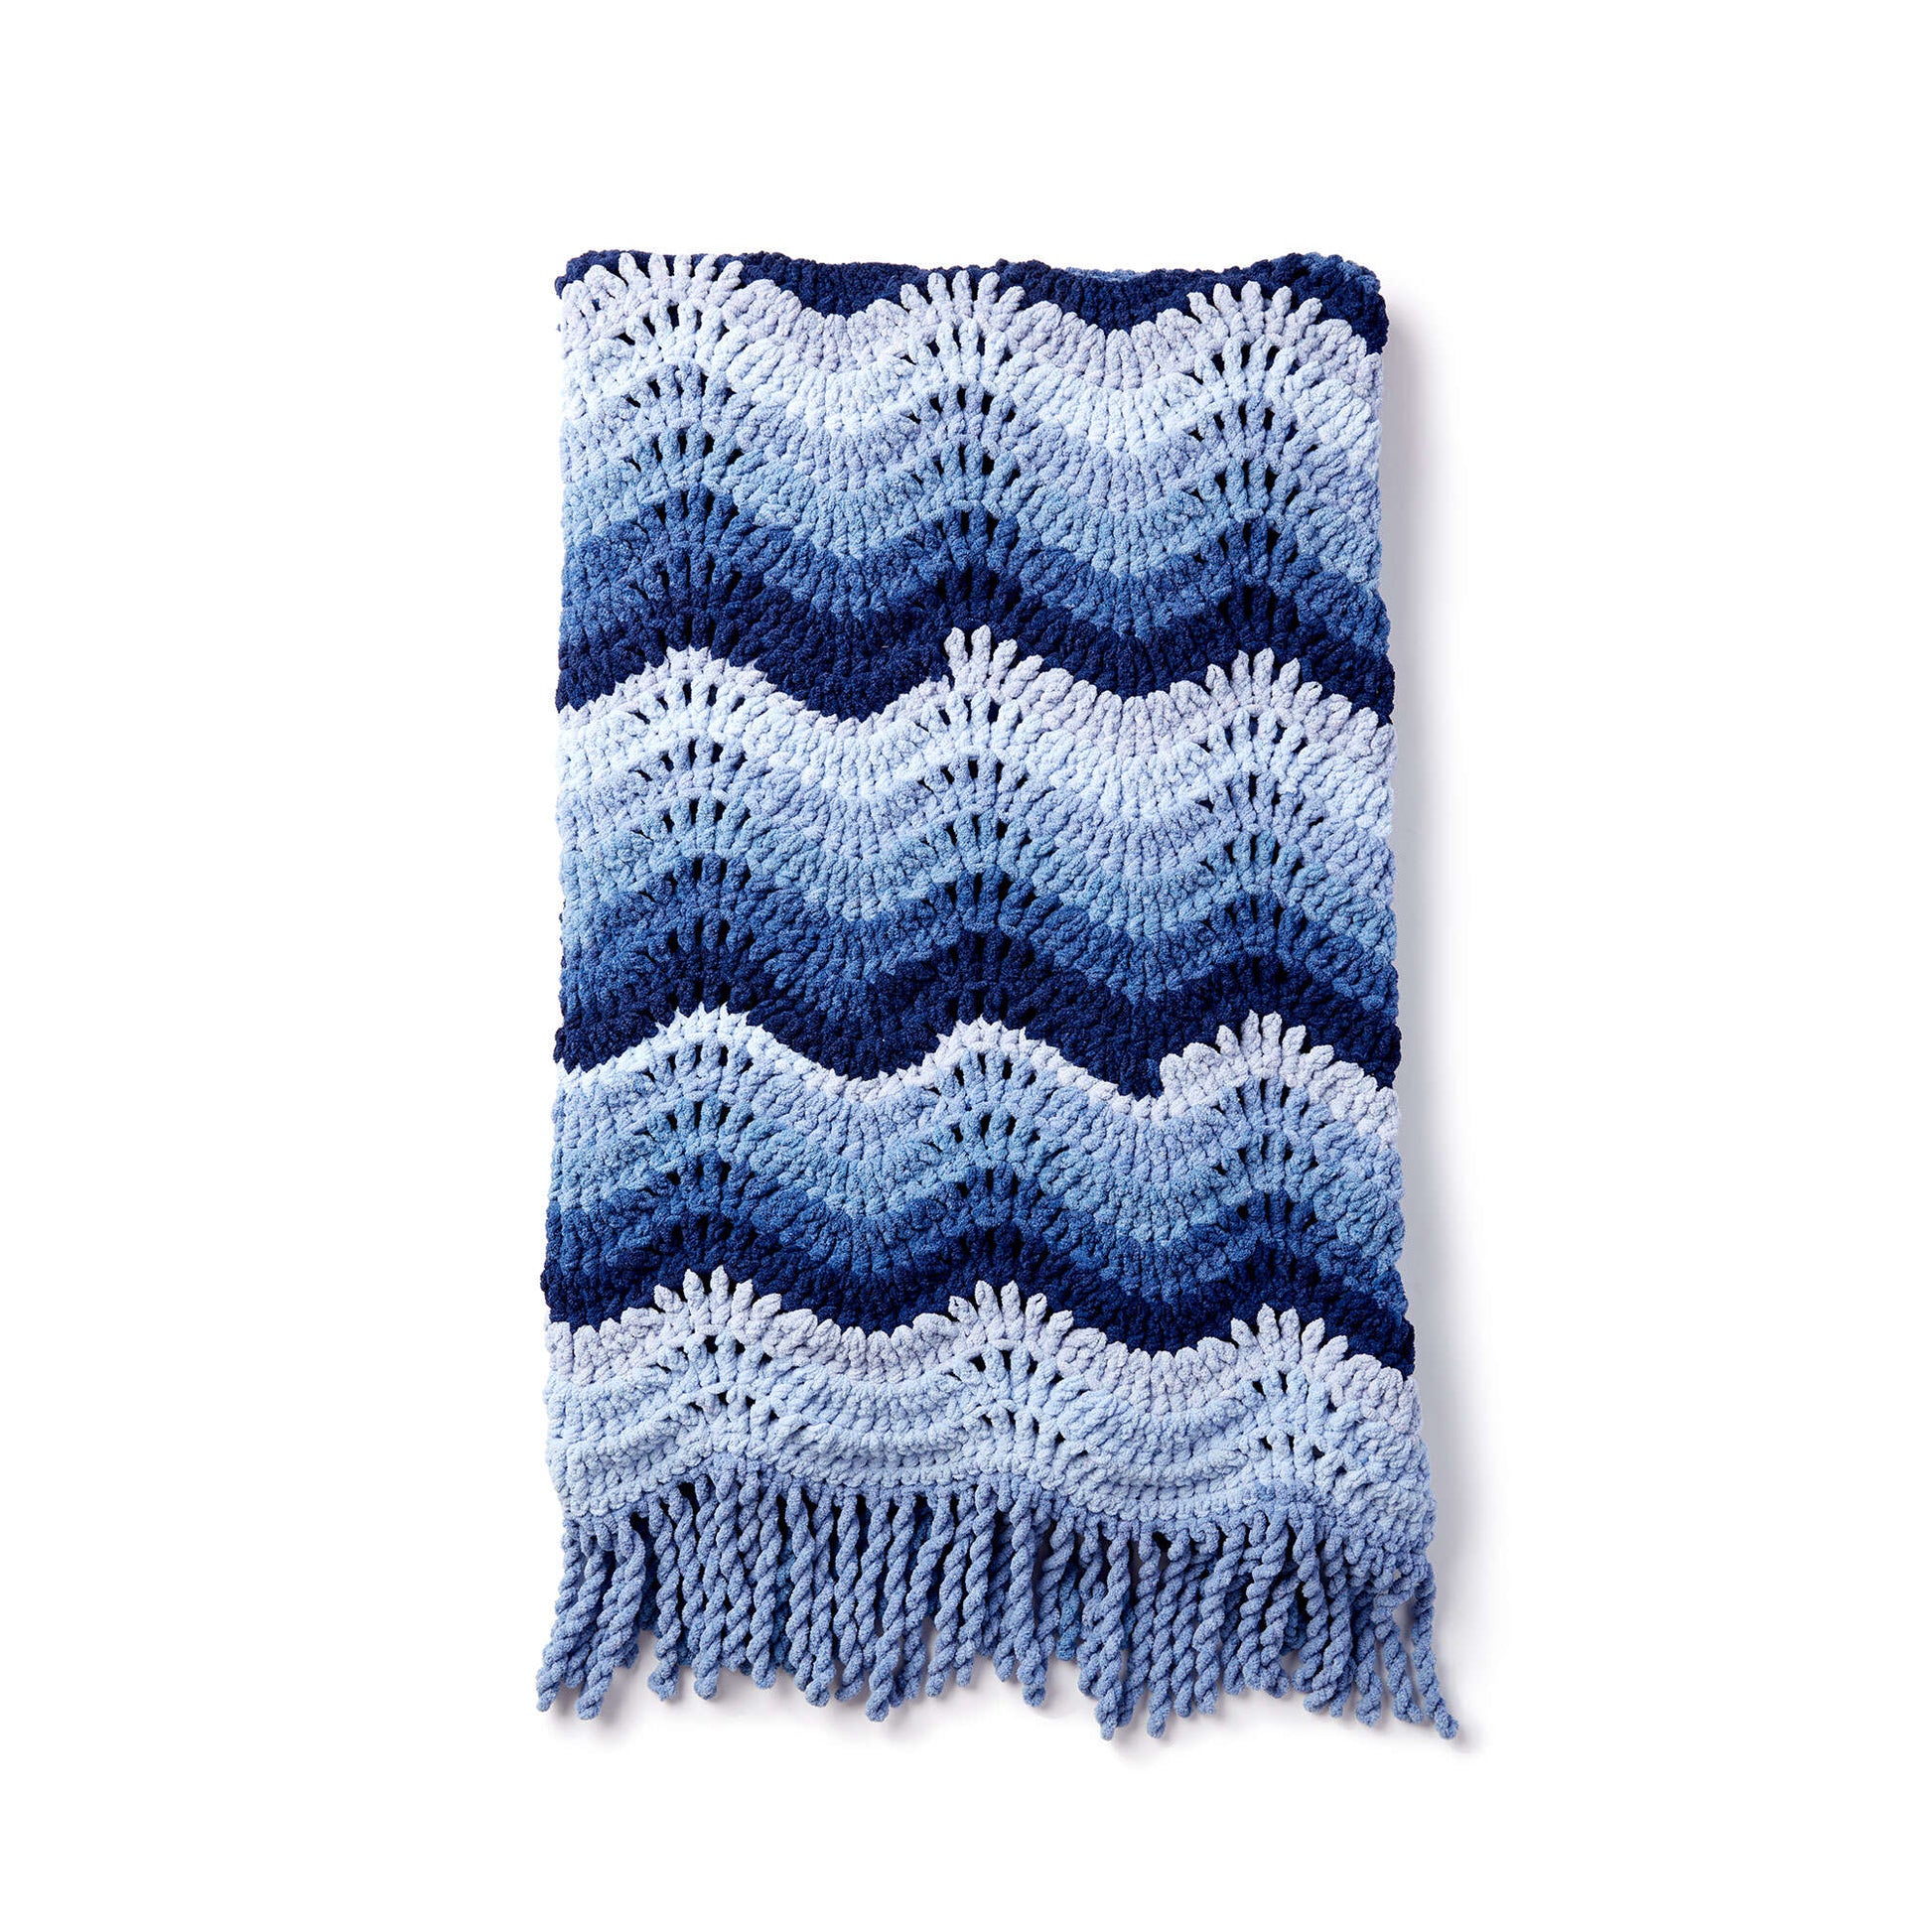 Free Bernat High Tide Crochet Blanket Pattern